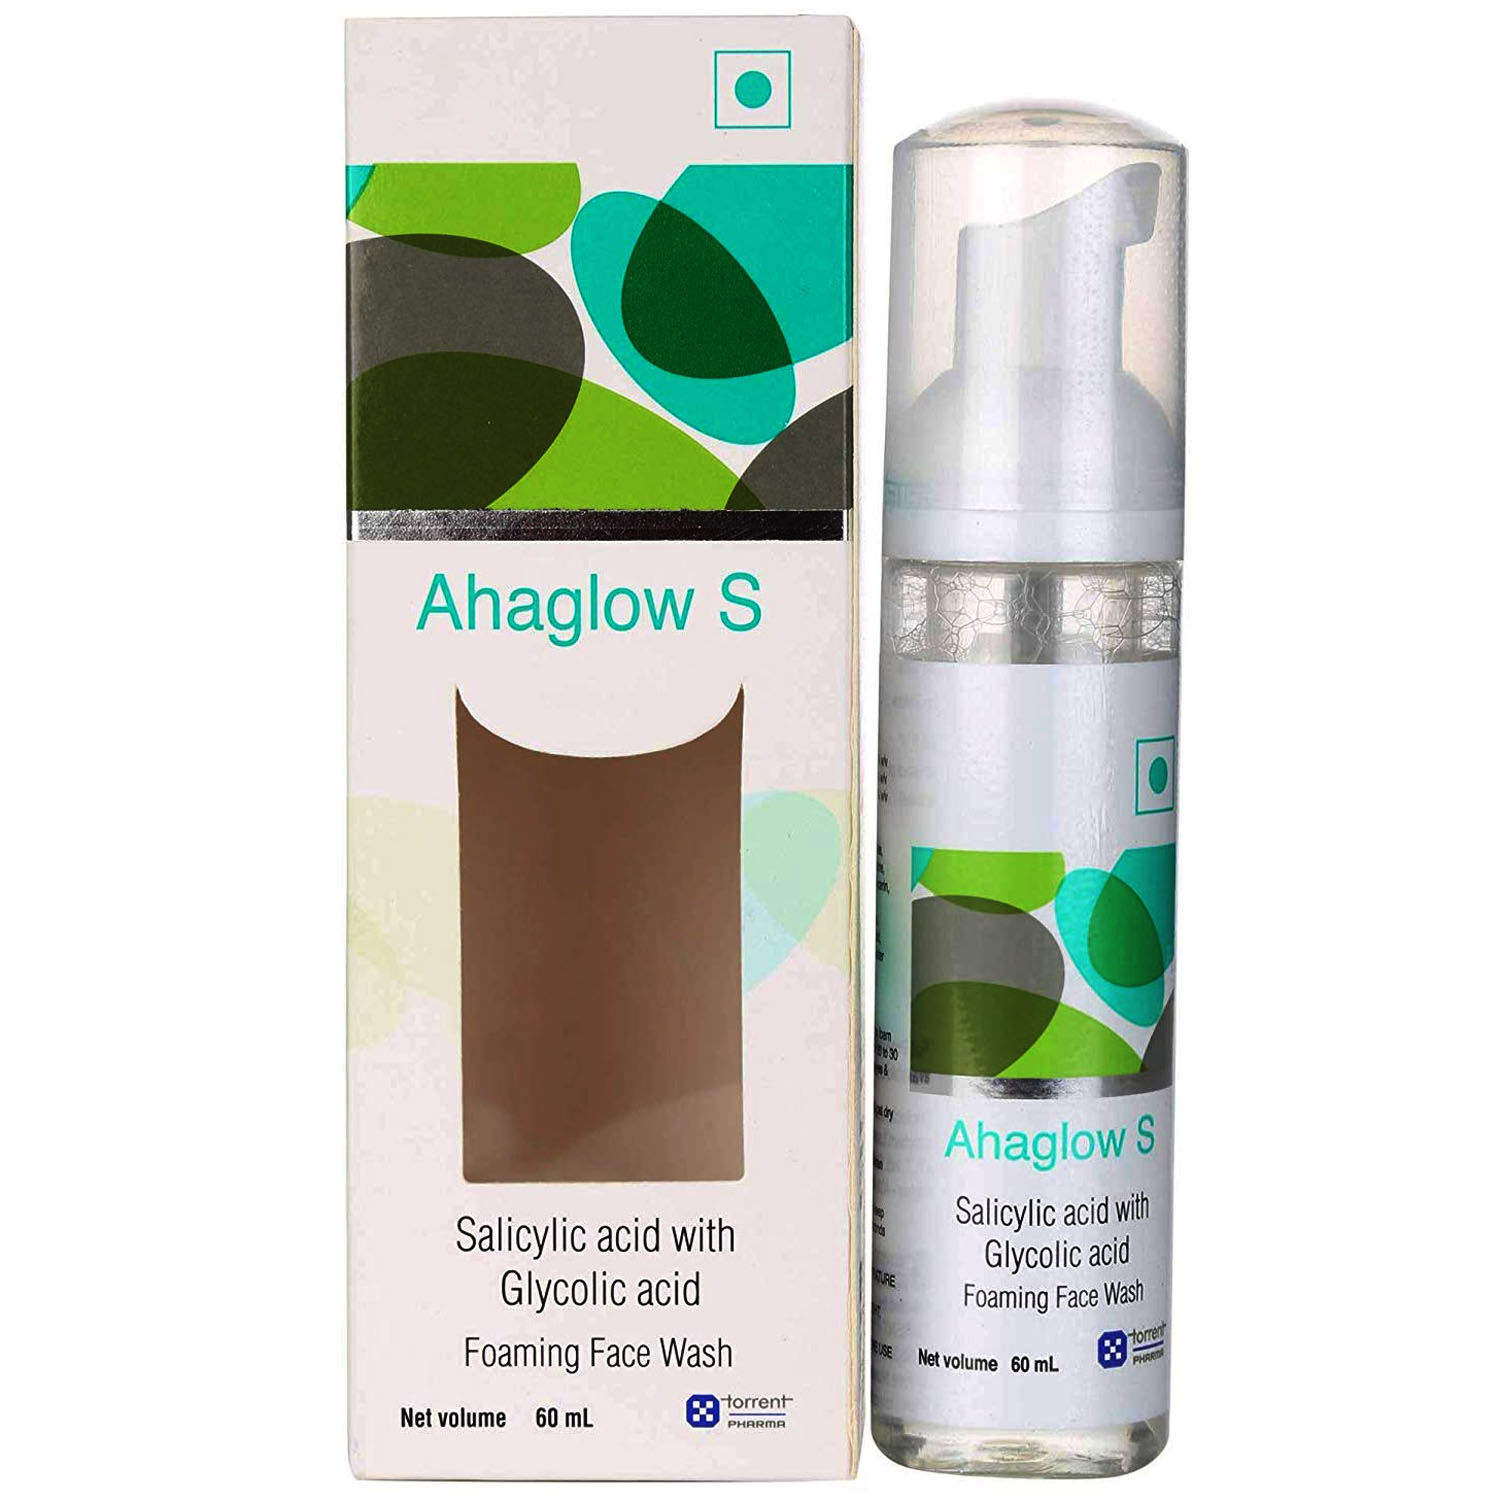 Buy Ahaglow S Foaming Face Wash, 60 ml Online